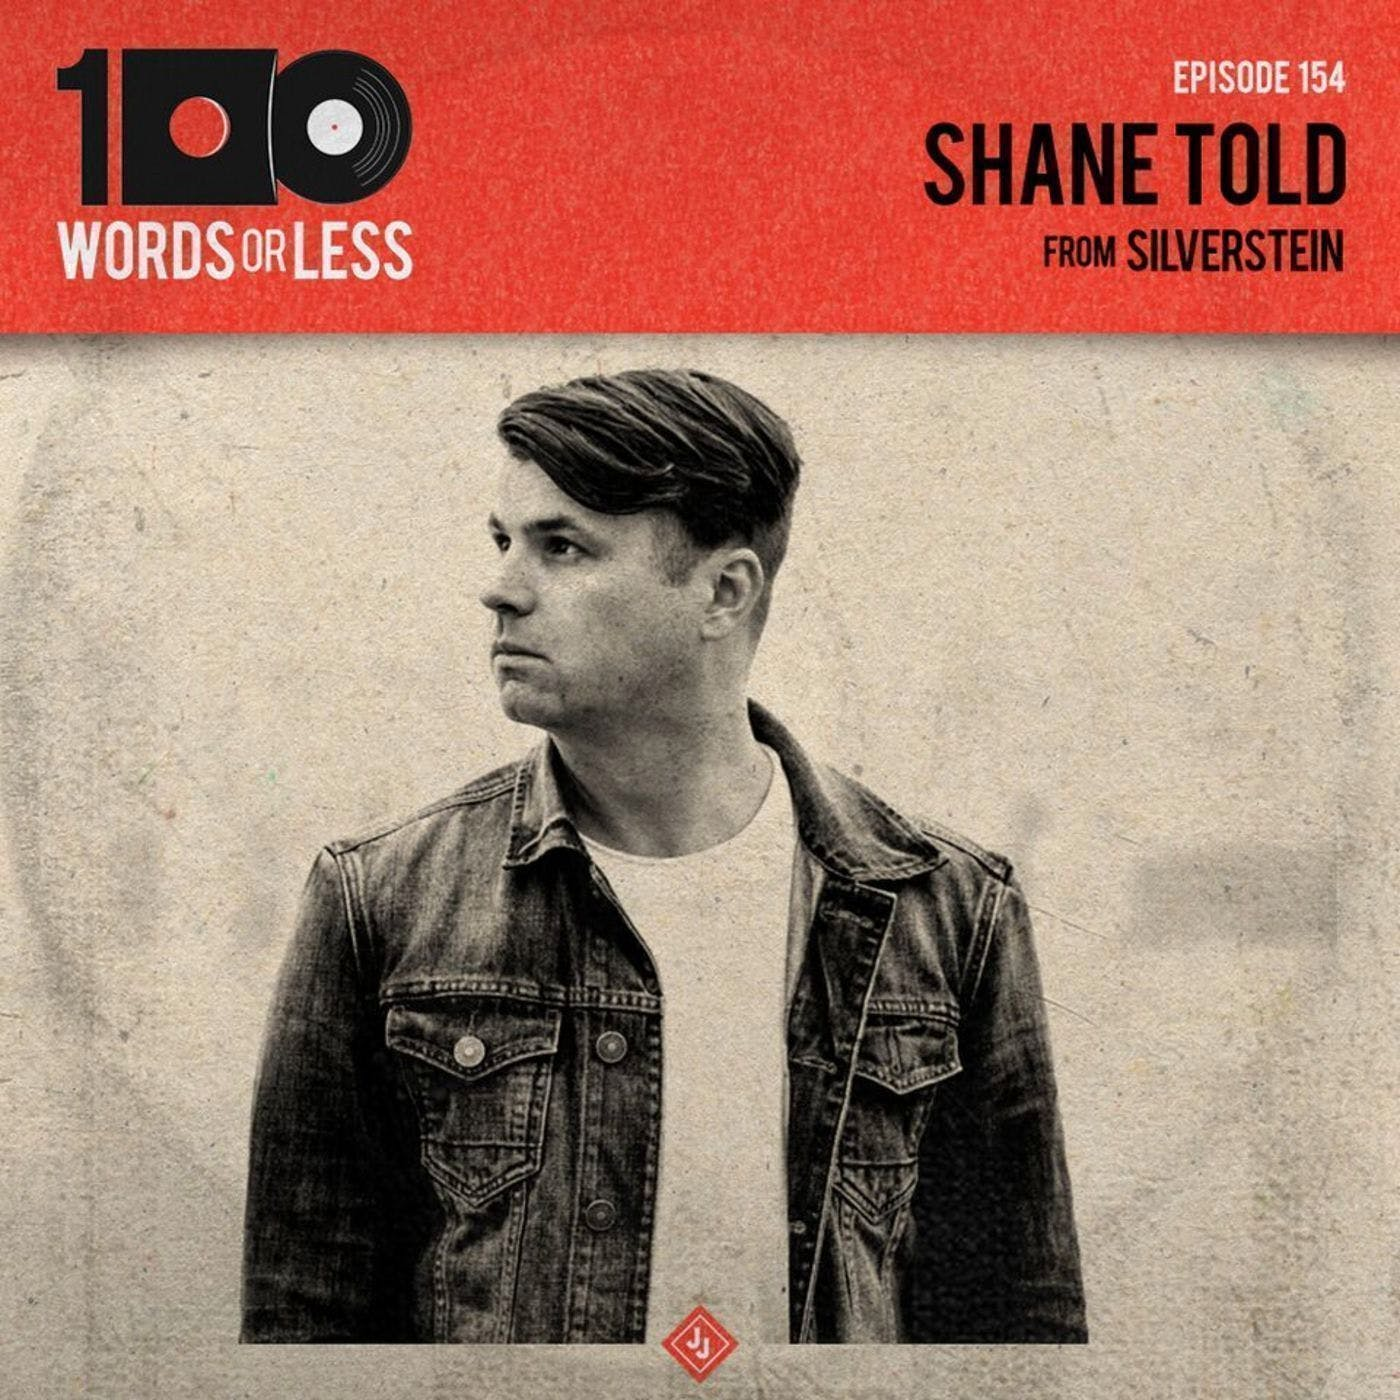 Shane Told from Silverstein